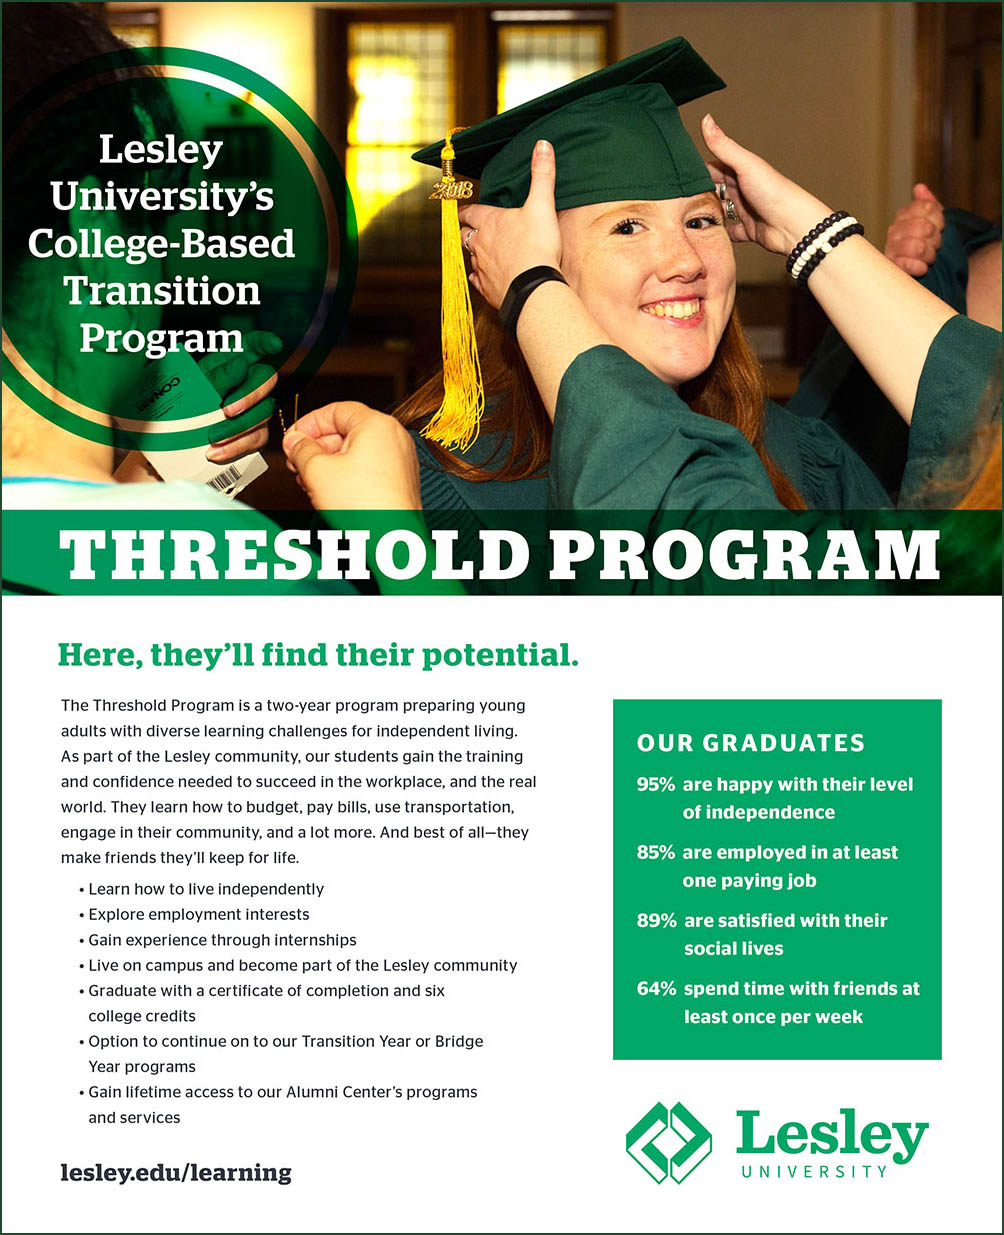 The Threshold Program at Lesley University